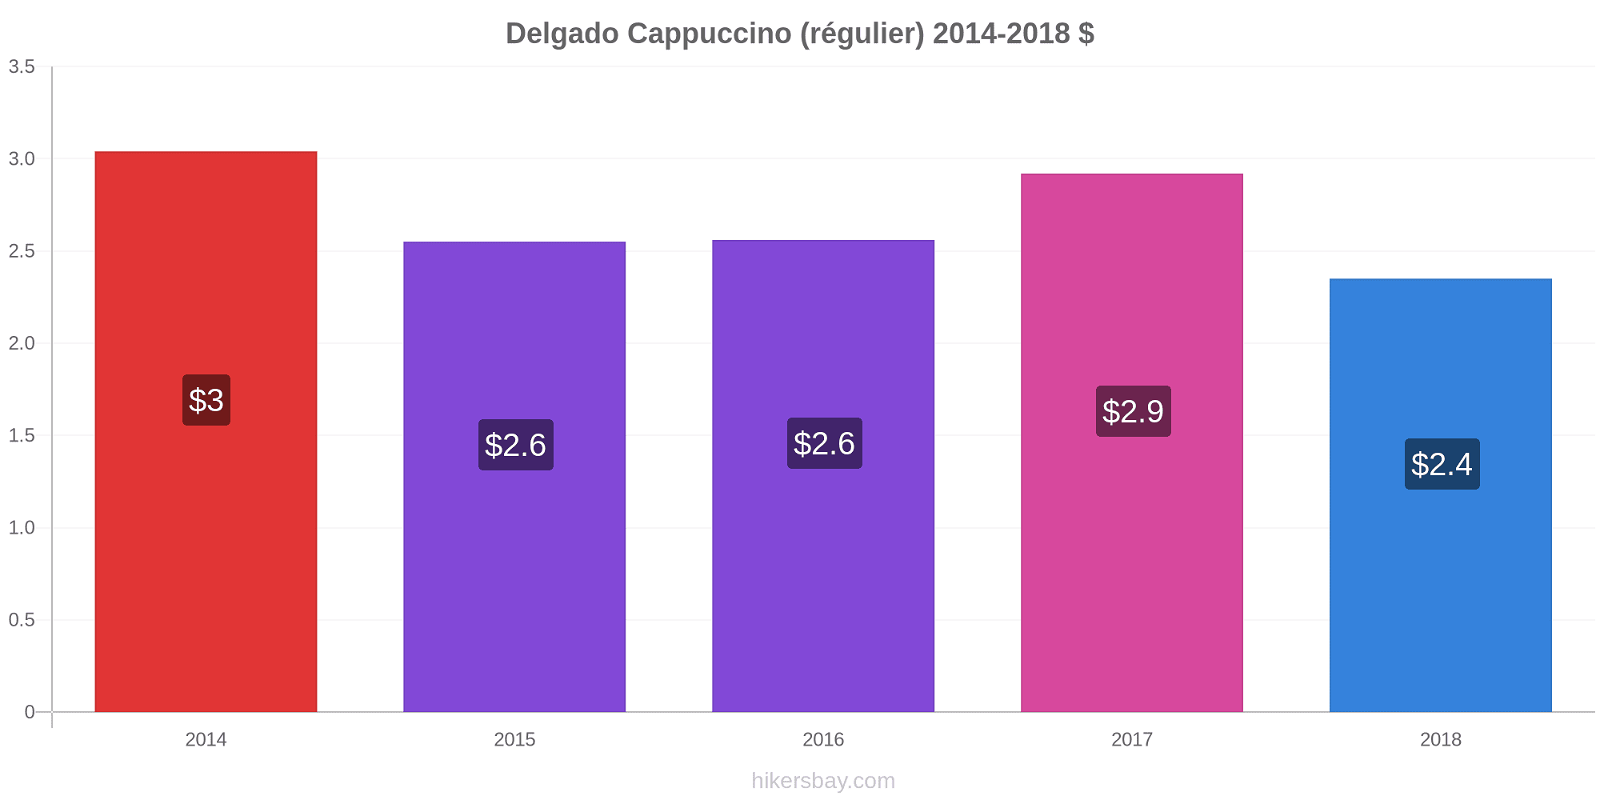 Delgado changements de prix Cappuccino (régulier) hikersbay.com